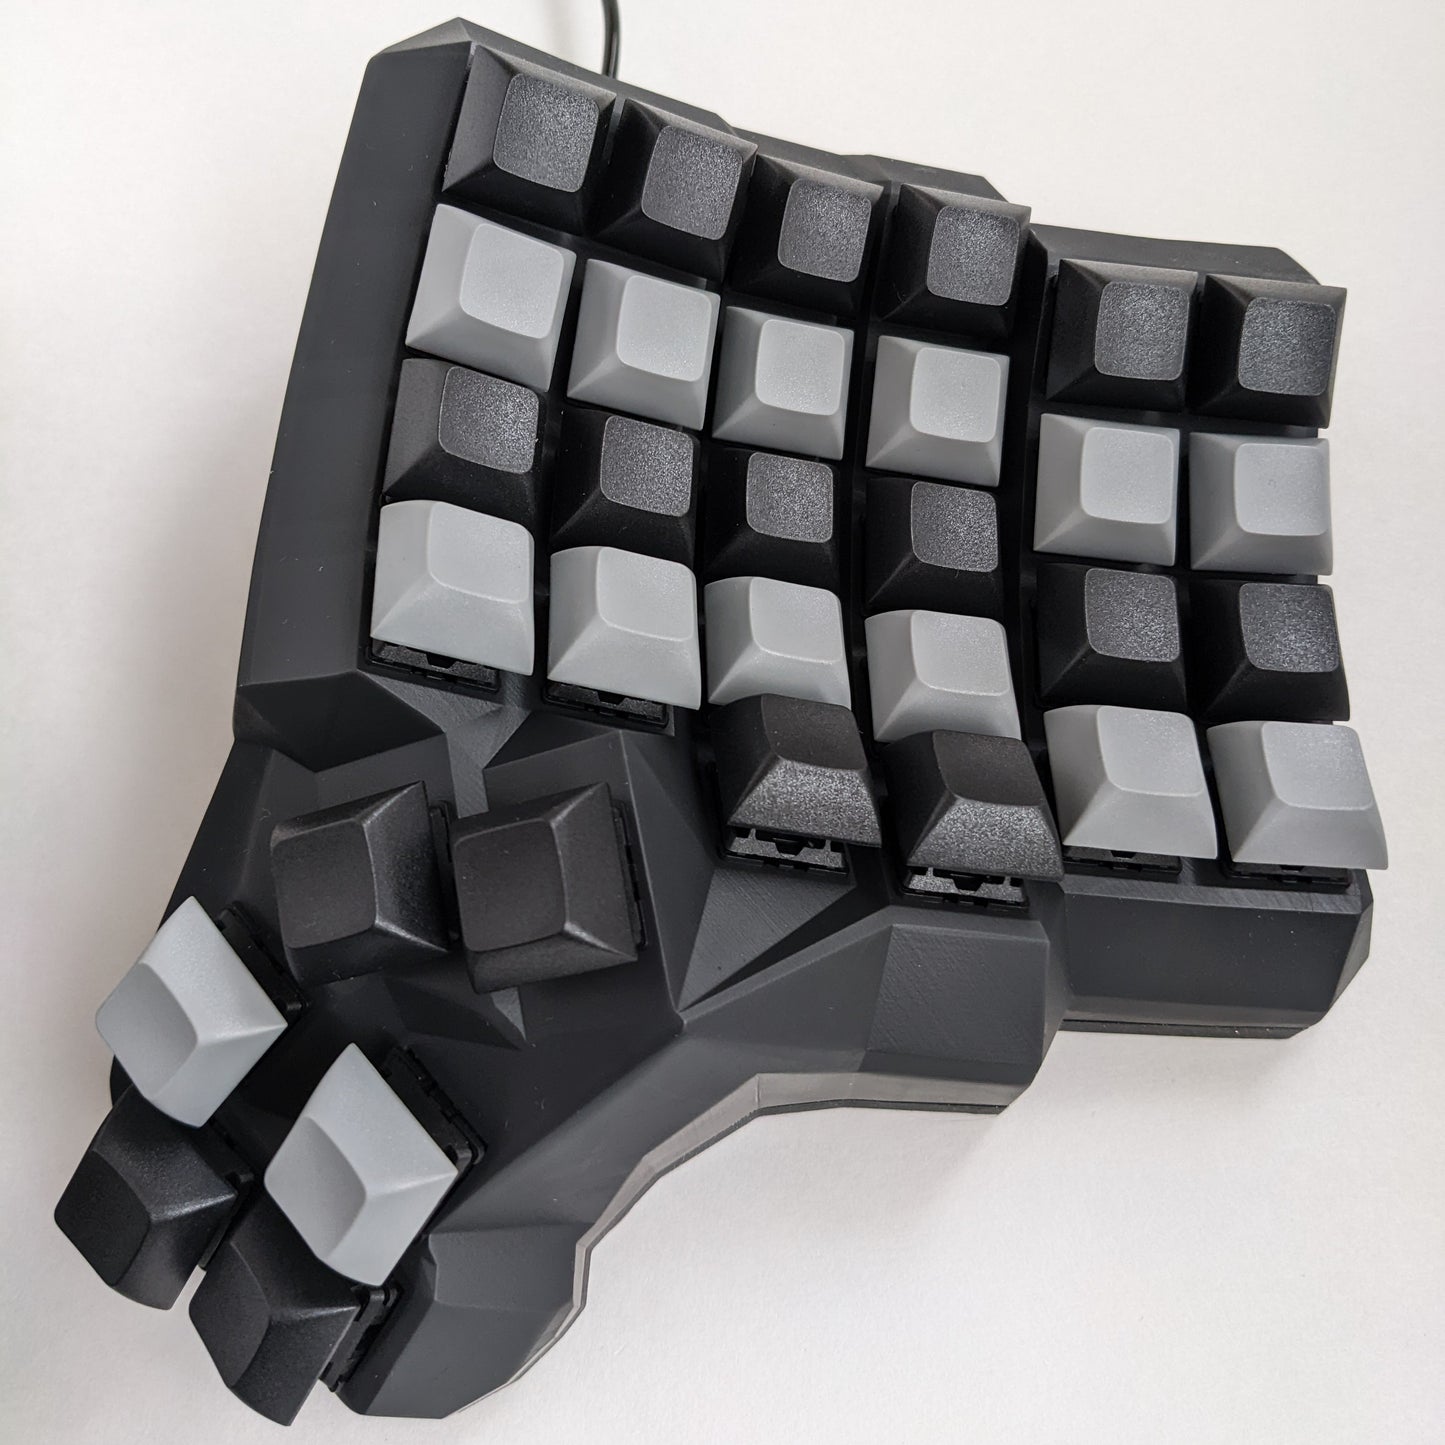 Dactyl Manuform Resin Keyboard